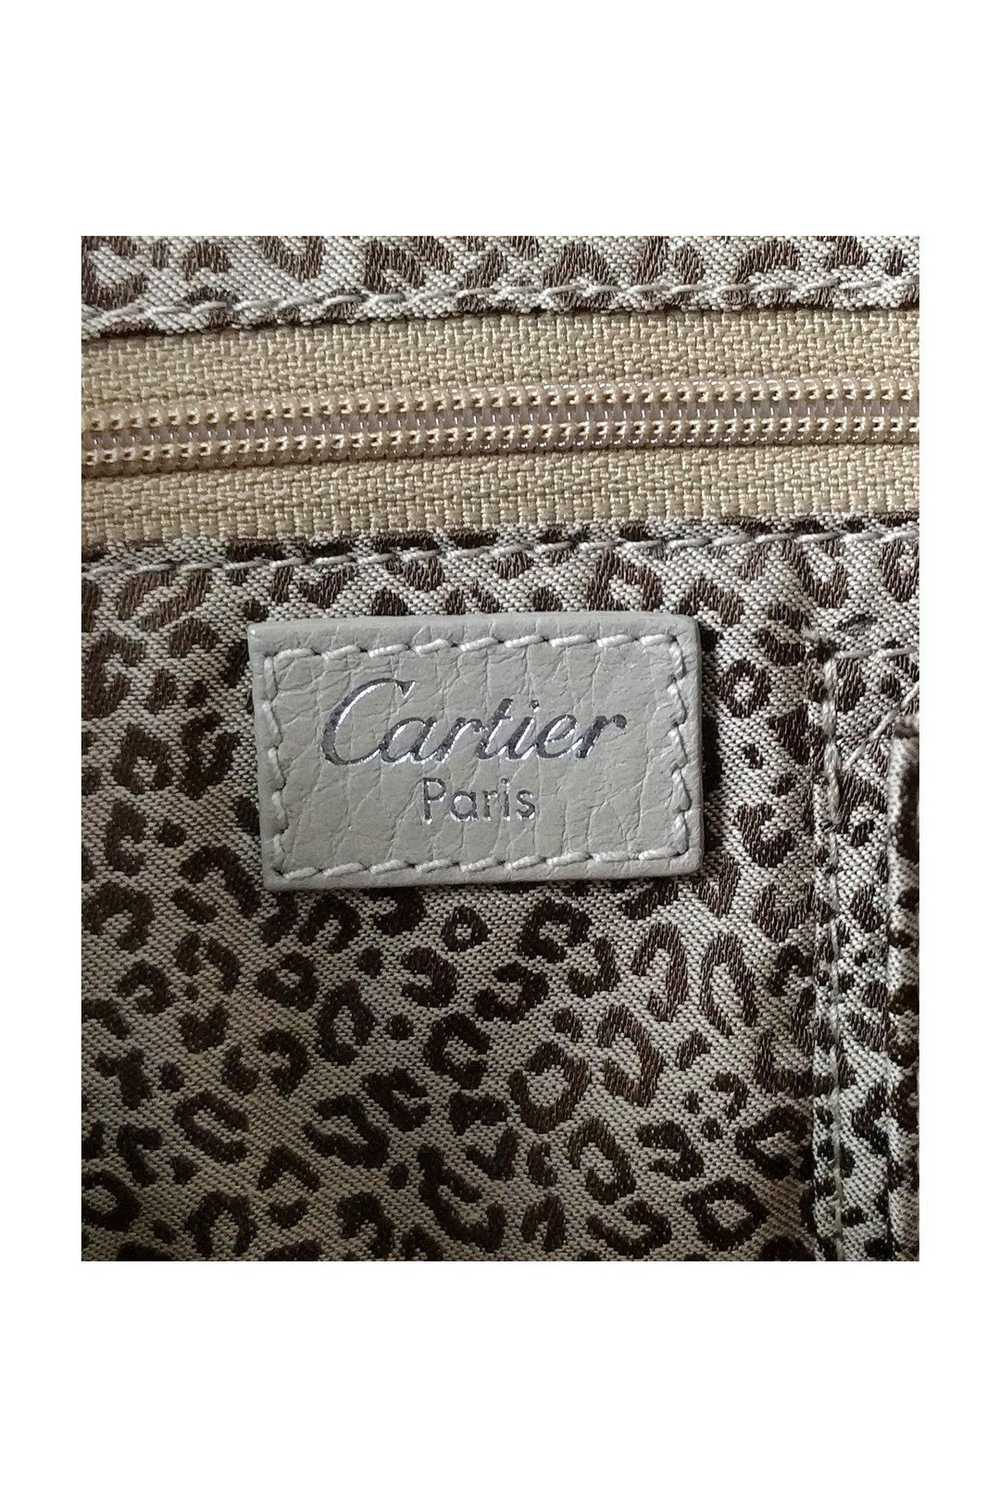 Cartier - Beige Canvas & Leather Shoulder Bag - image 7